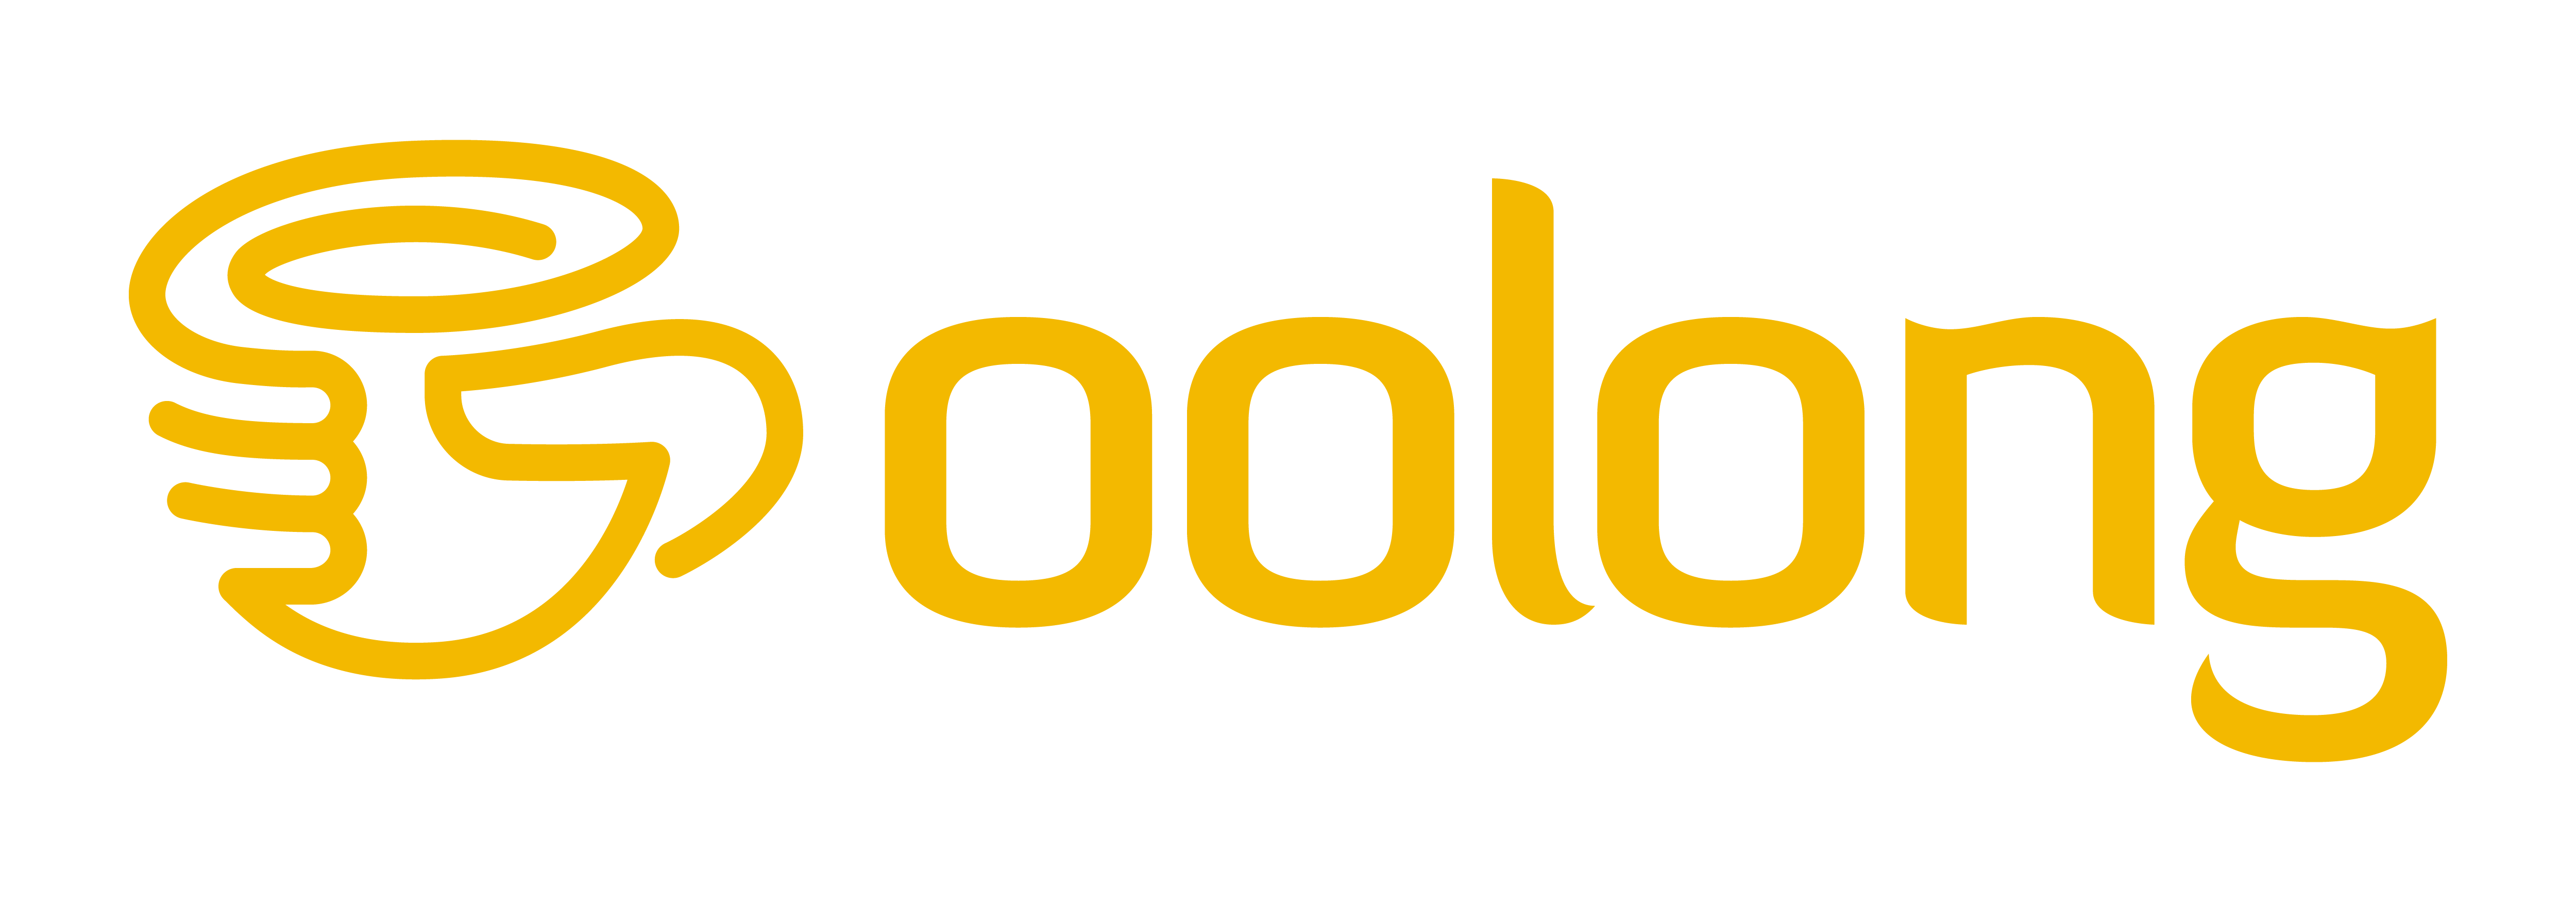 Oolong Logo